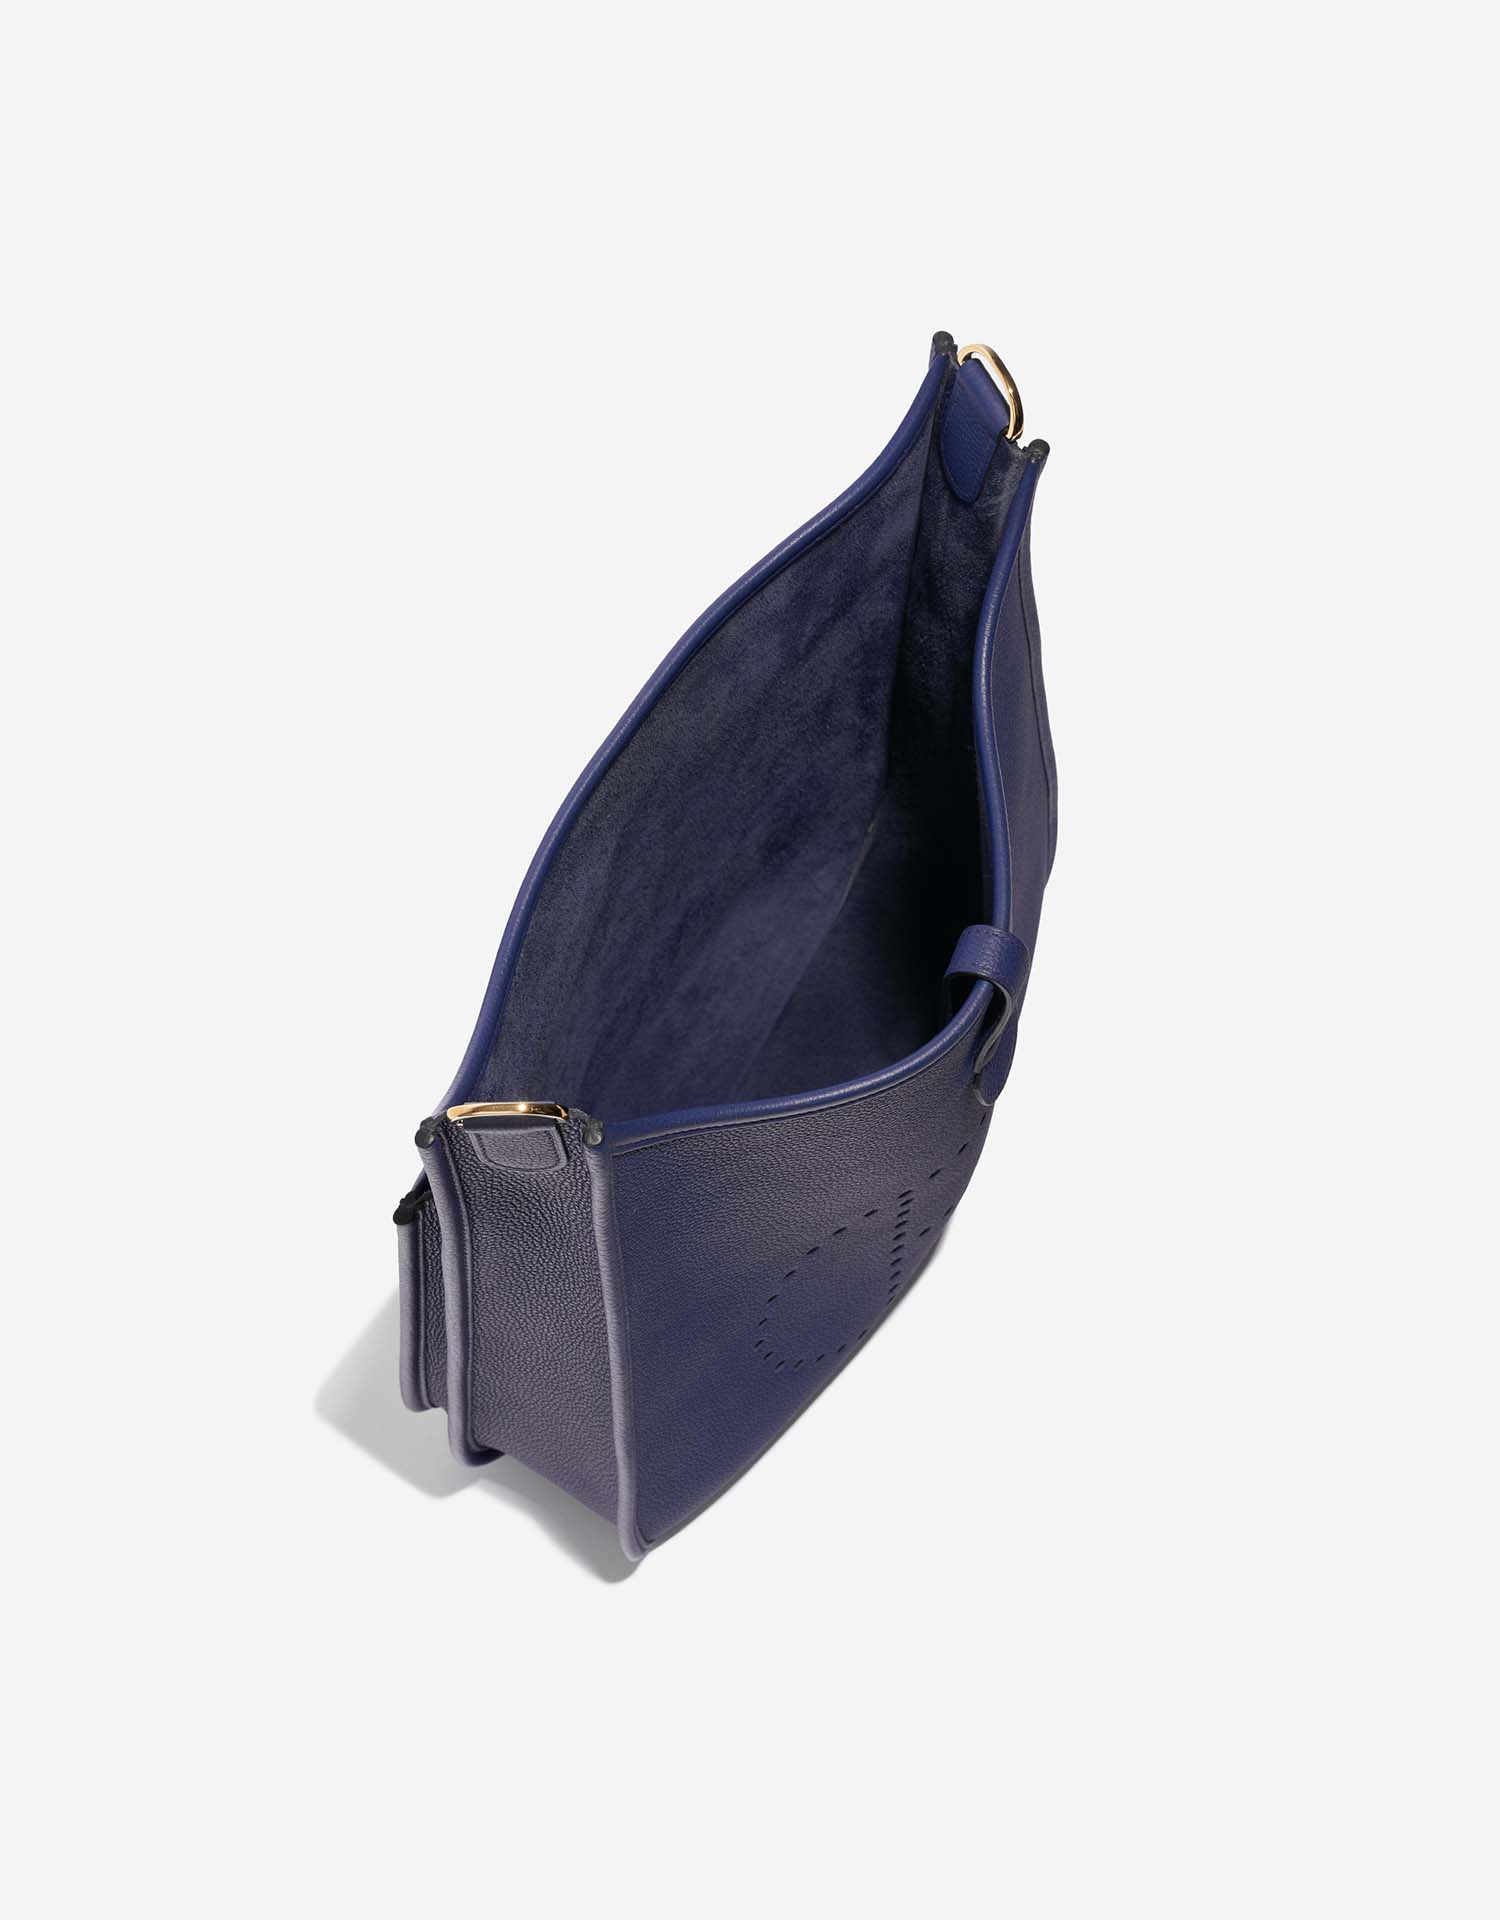 Hermès Evelyne 29 BleuSapphire Inside | Verkaufen Sie Ihre Designertasche auf Saclab.com